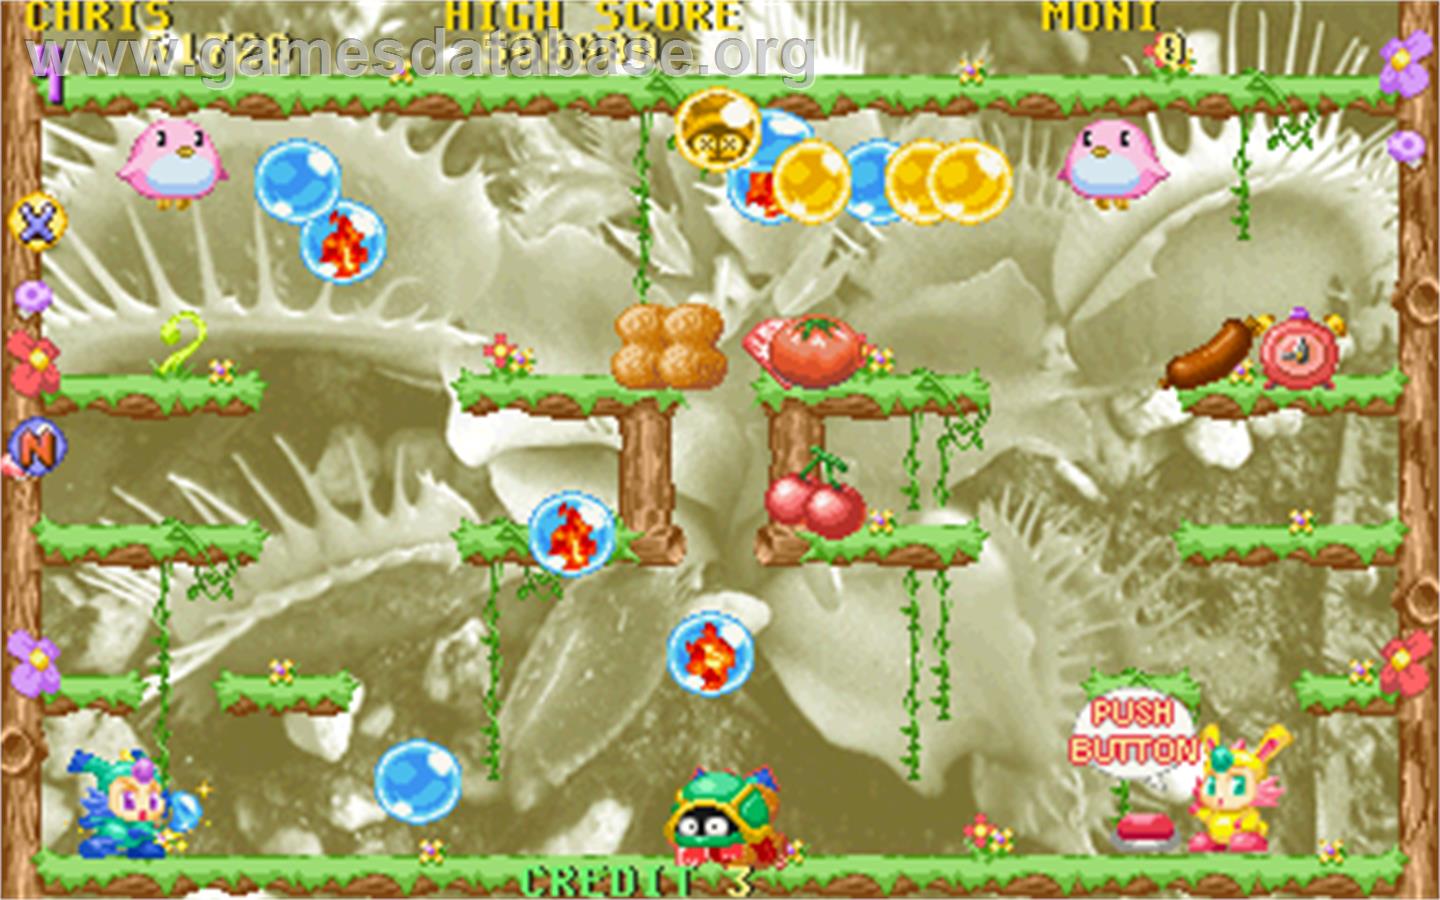 Super Bubble 2003 - Arcade - Artwork - In Game